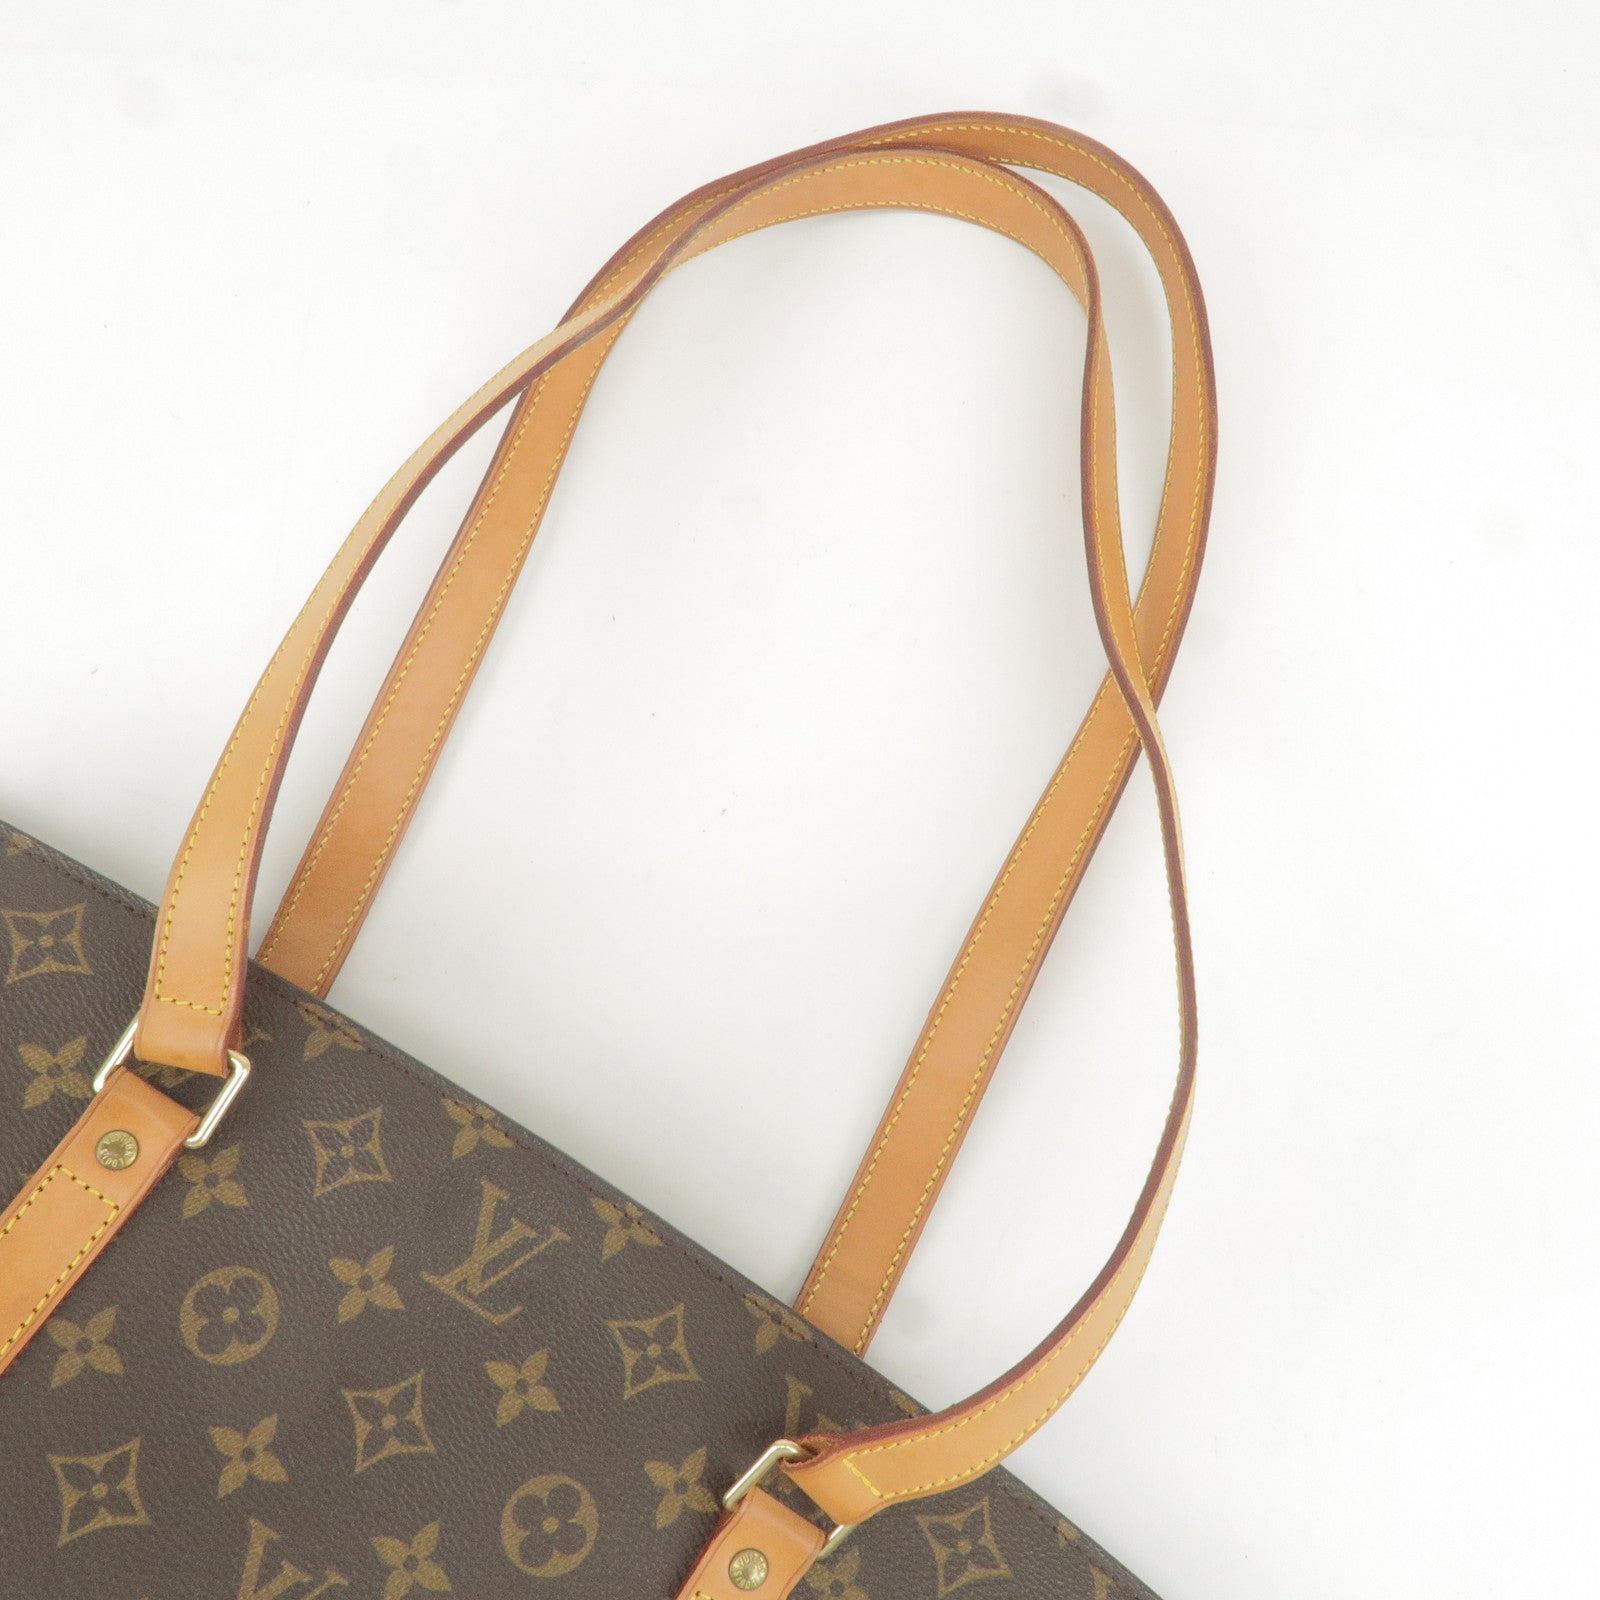 Authentic Louis Vuitton Monogram Babylone Shoulder Tote Bag M51102 LV J5263